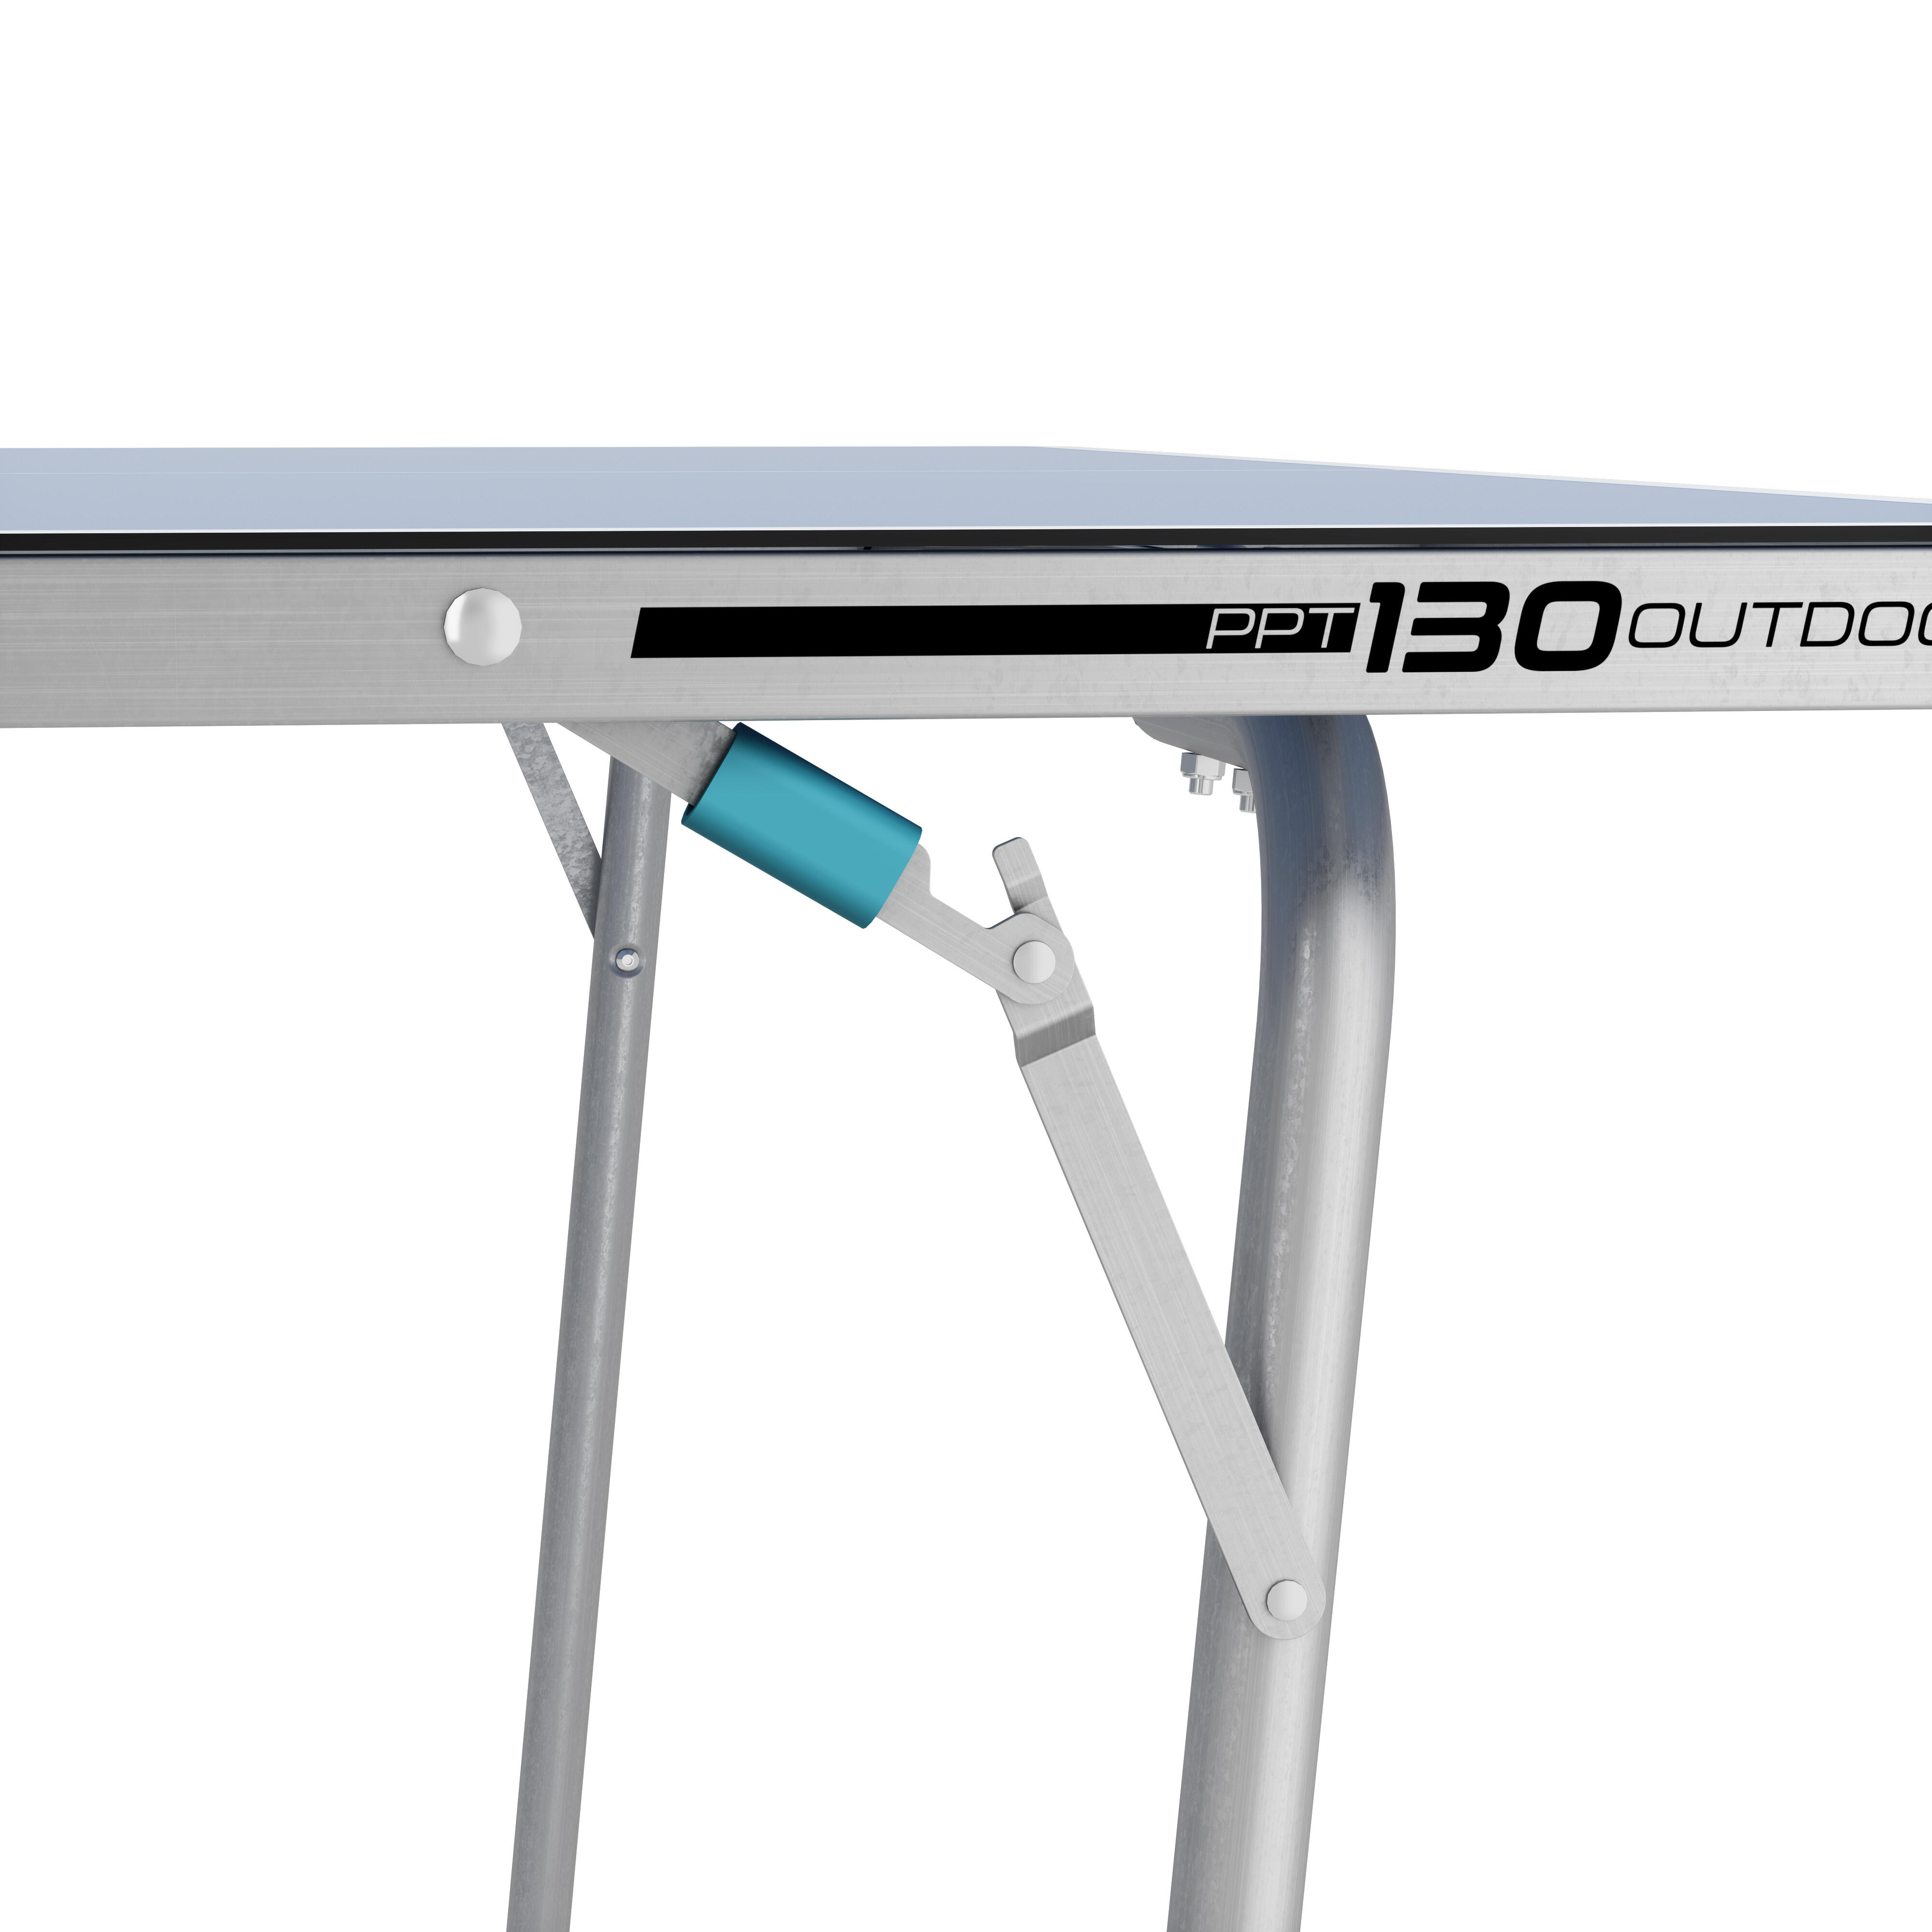 PONGORI Pied Droit De Rechange Pour Table Ping Pong Ppt130 Et Medium Outdoor -